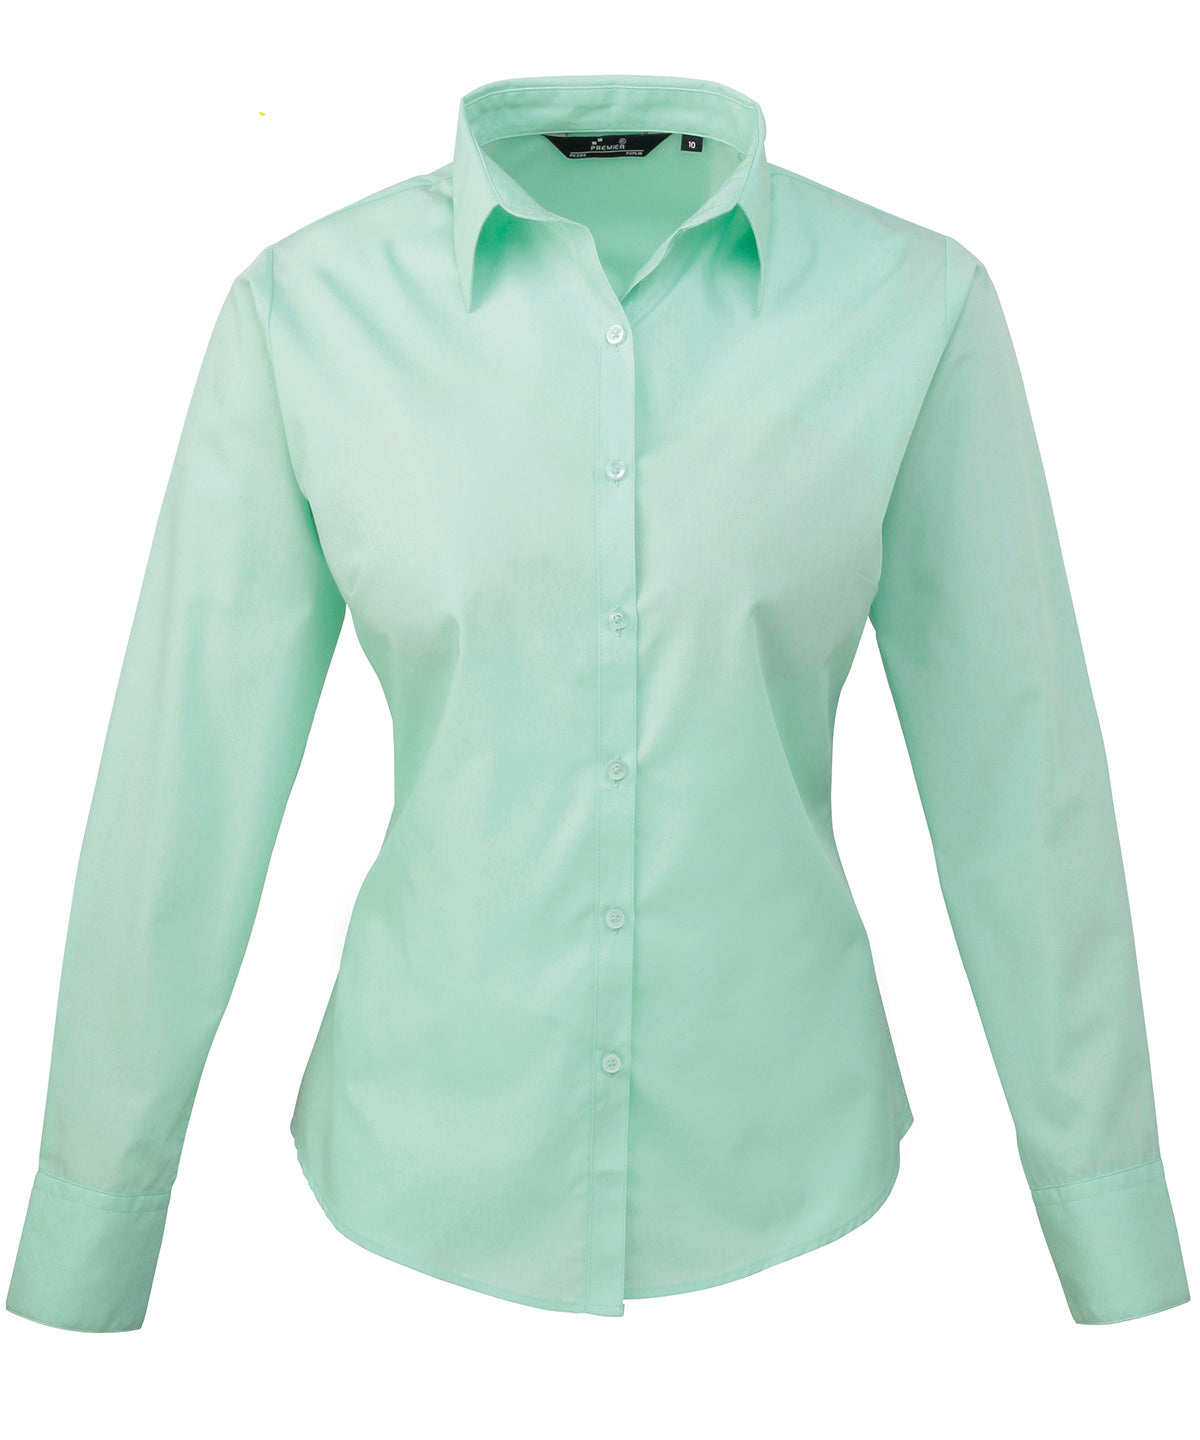 Premier Women's poplin long sleeve blouse Aqua